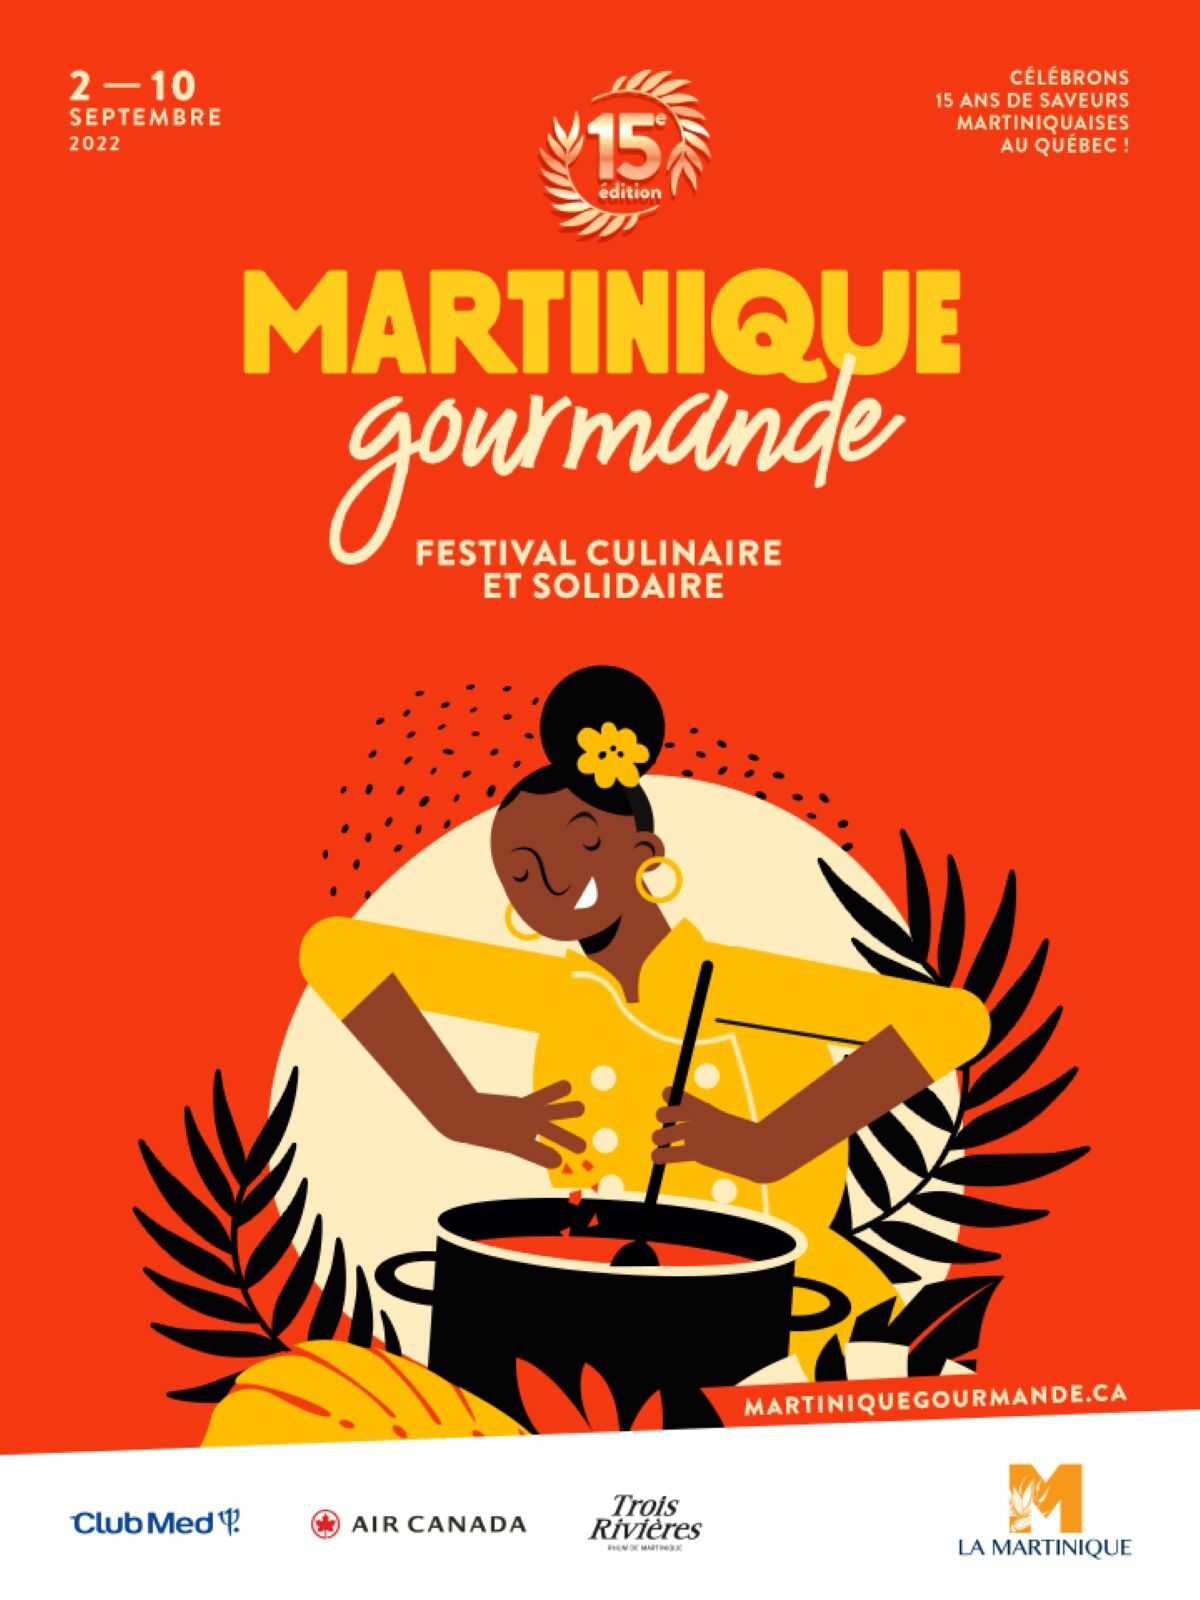 Martinique Gourmande